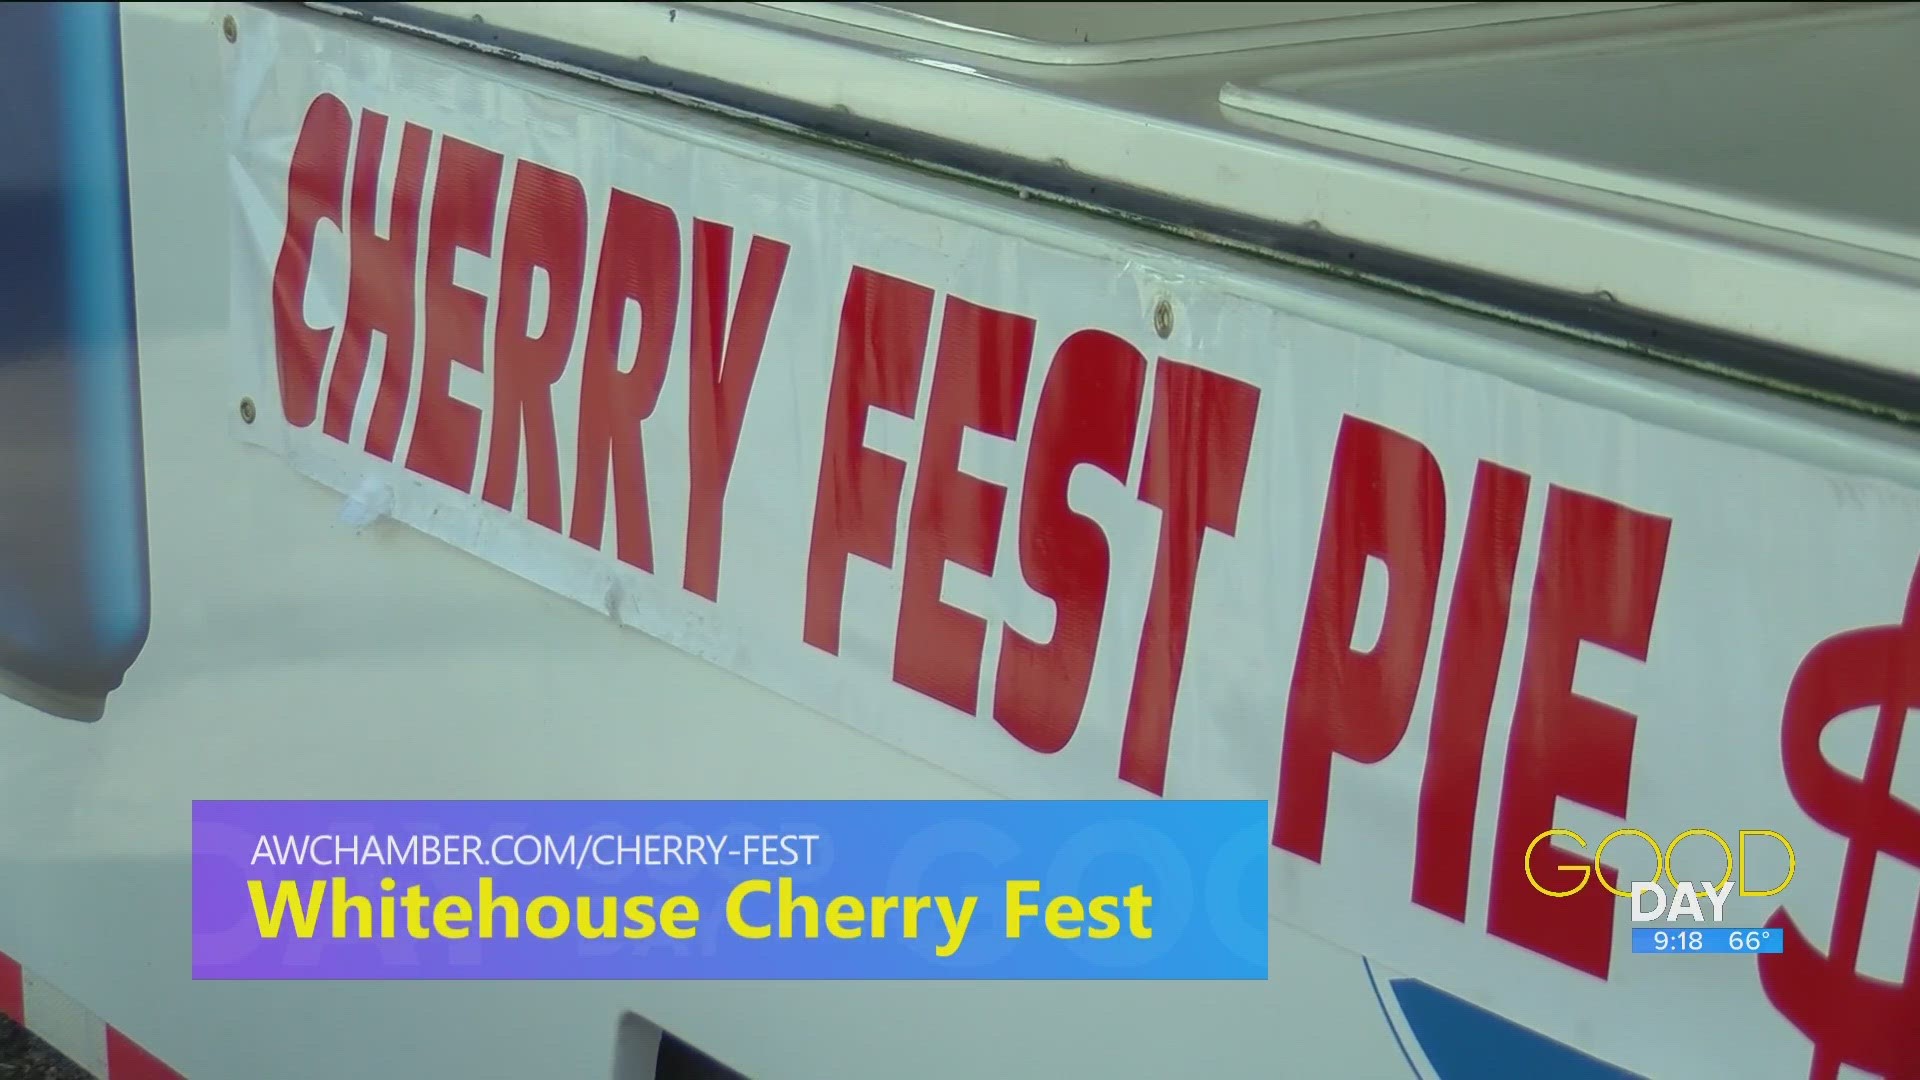 Jason Gorr of the Whitehouse Cherry Fest talks plans for the festival's 40th anniversary.